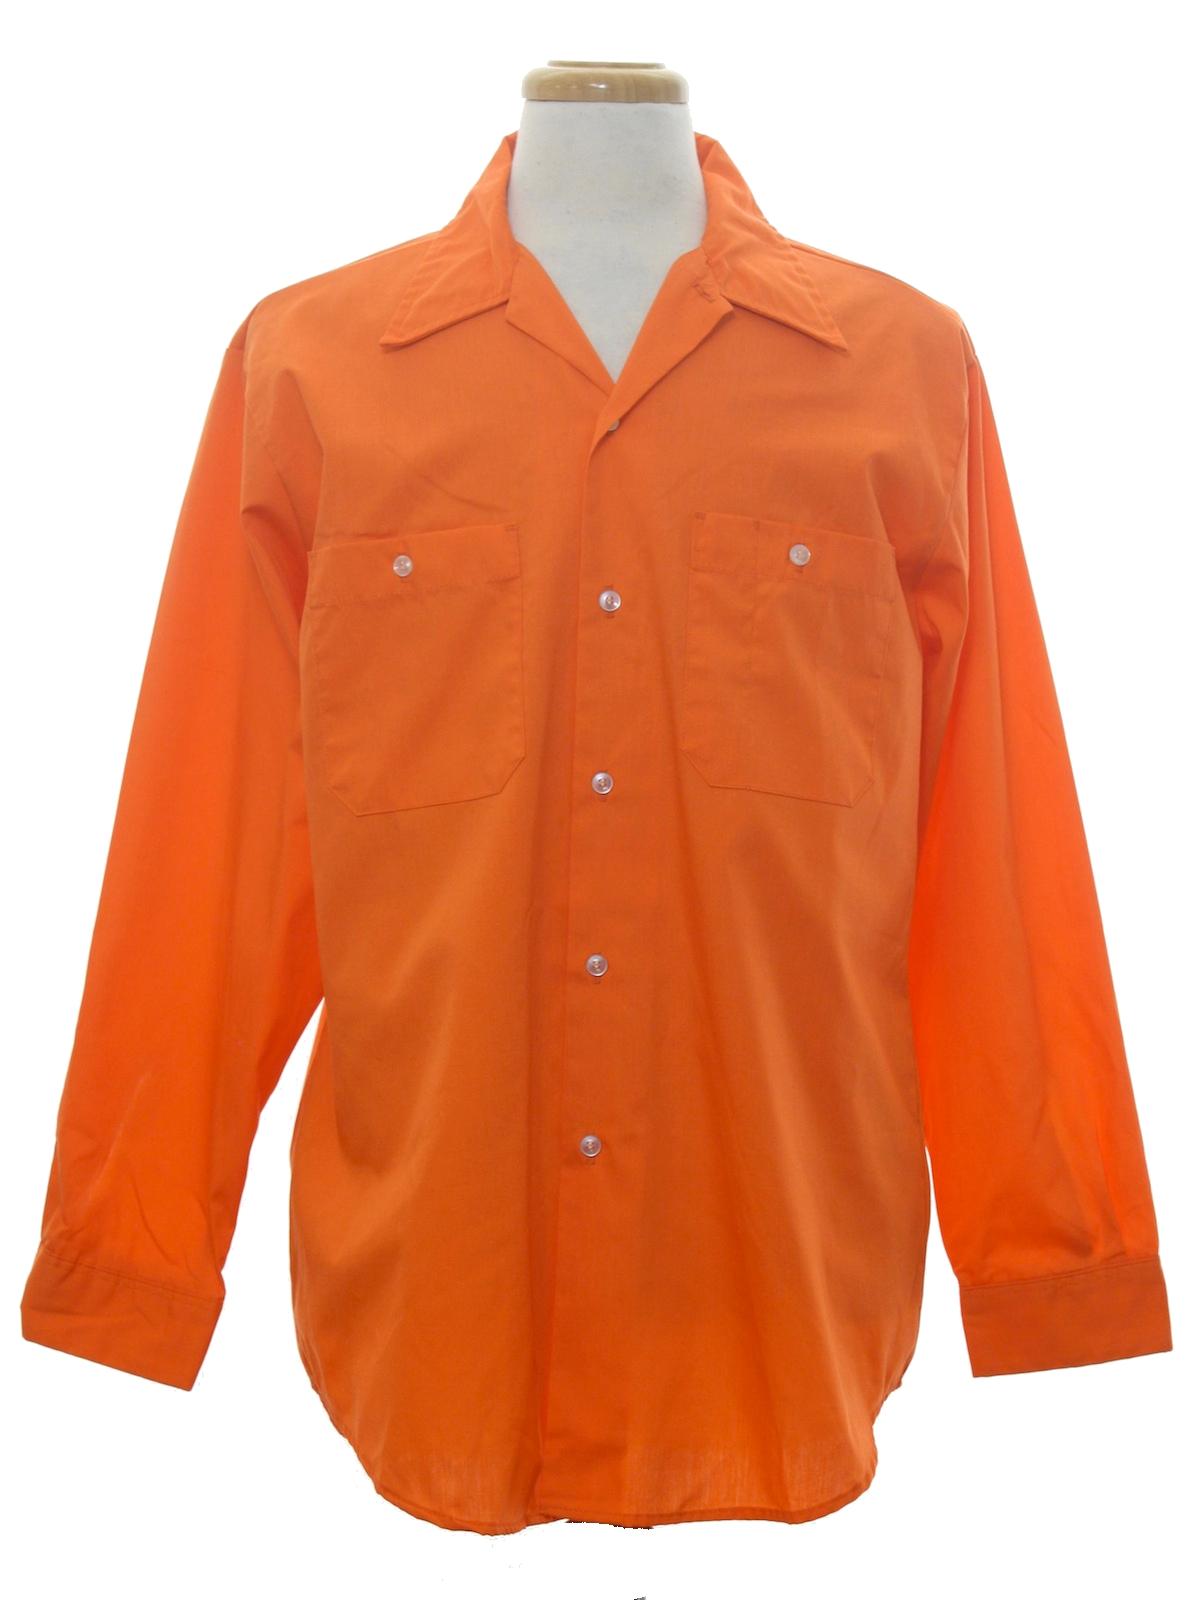 正規品、日本製 70's shirt work vintage ミリタリージャケット